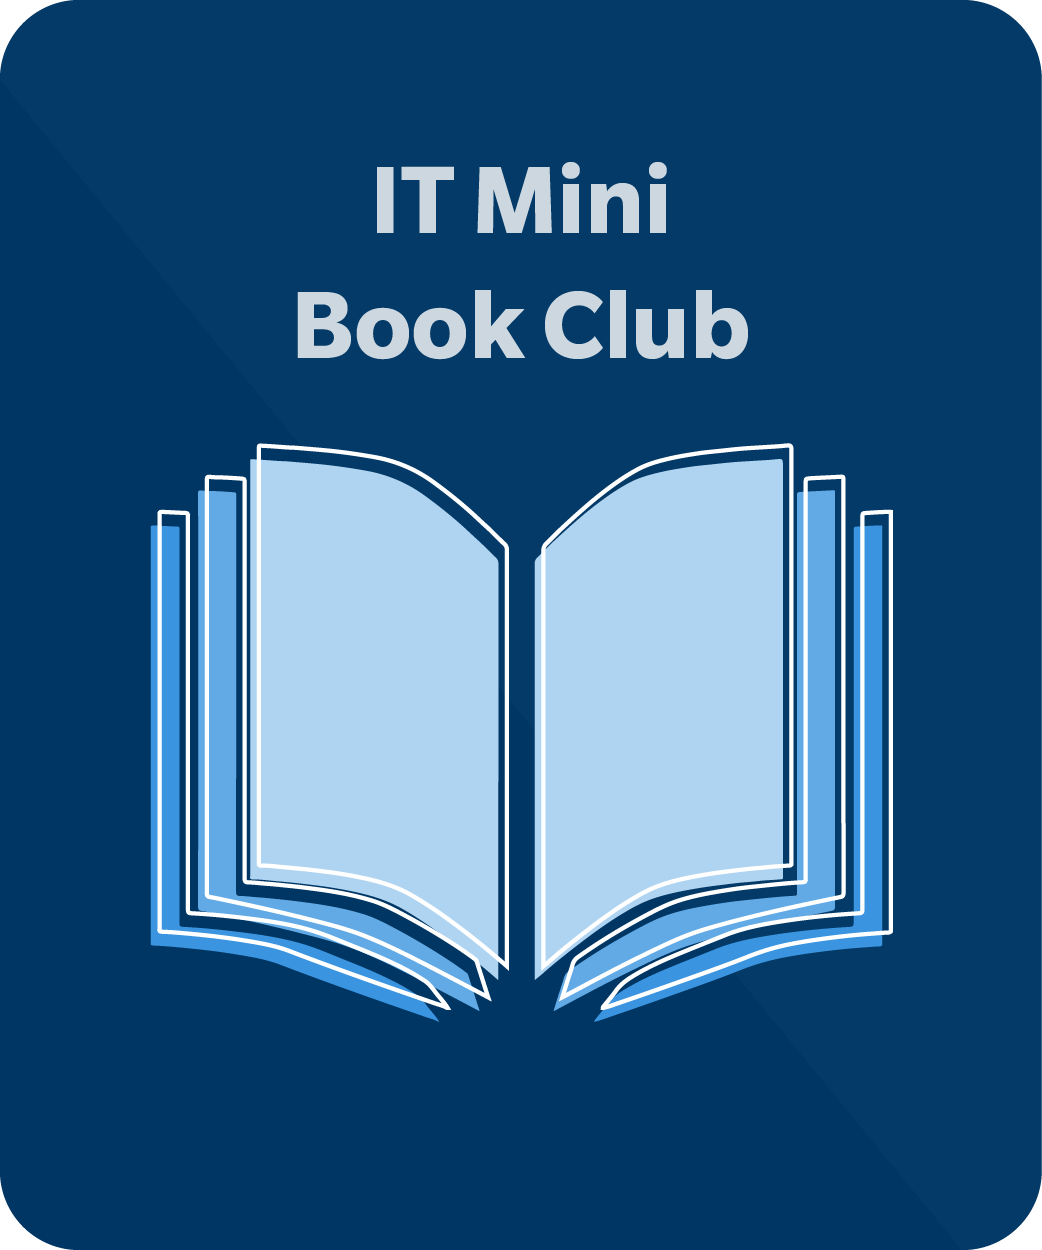 IT Mini Book Club, book icon